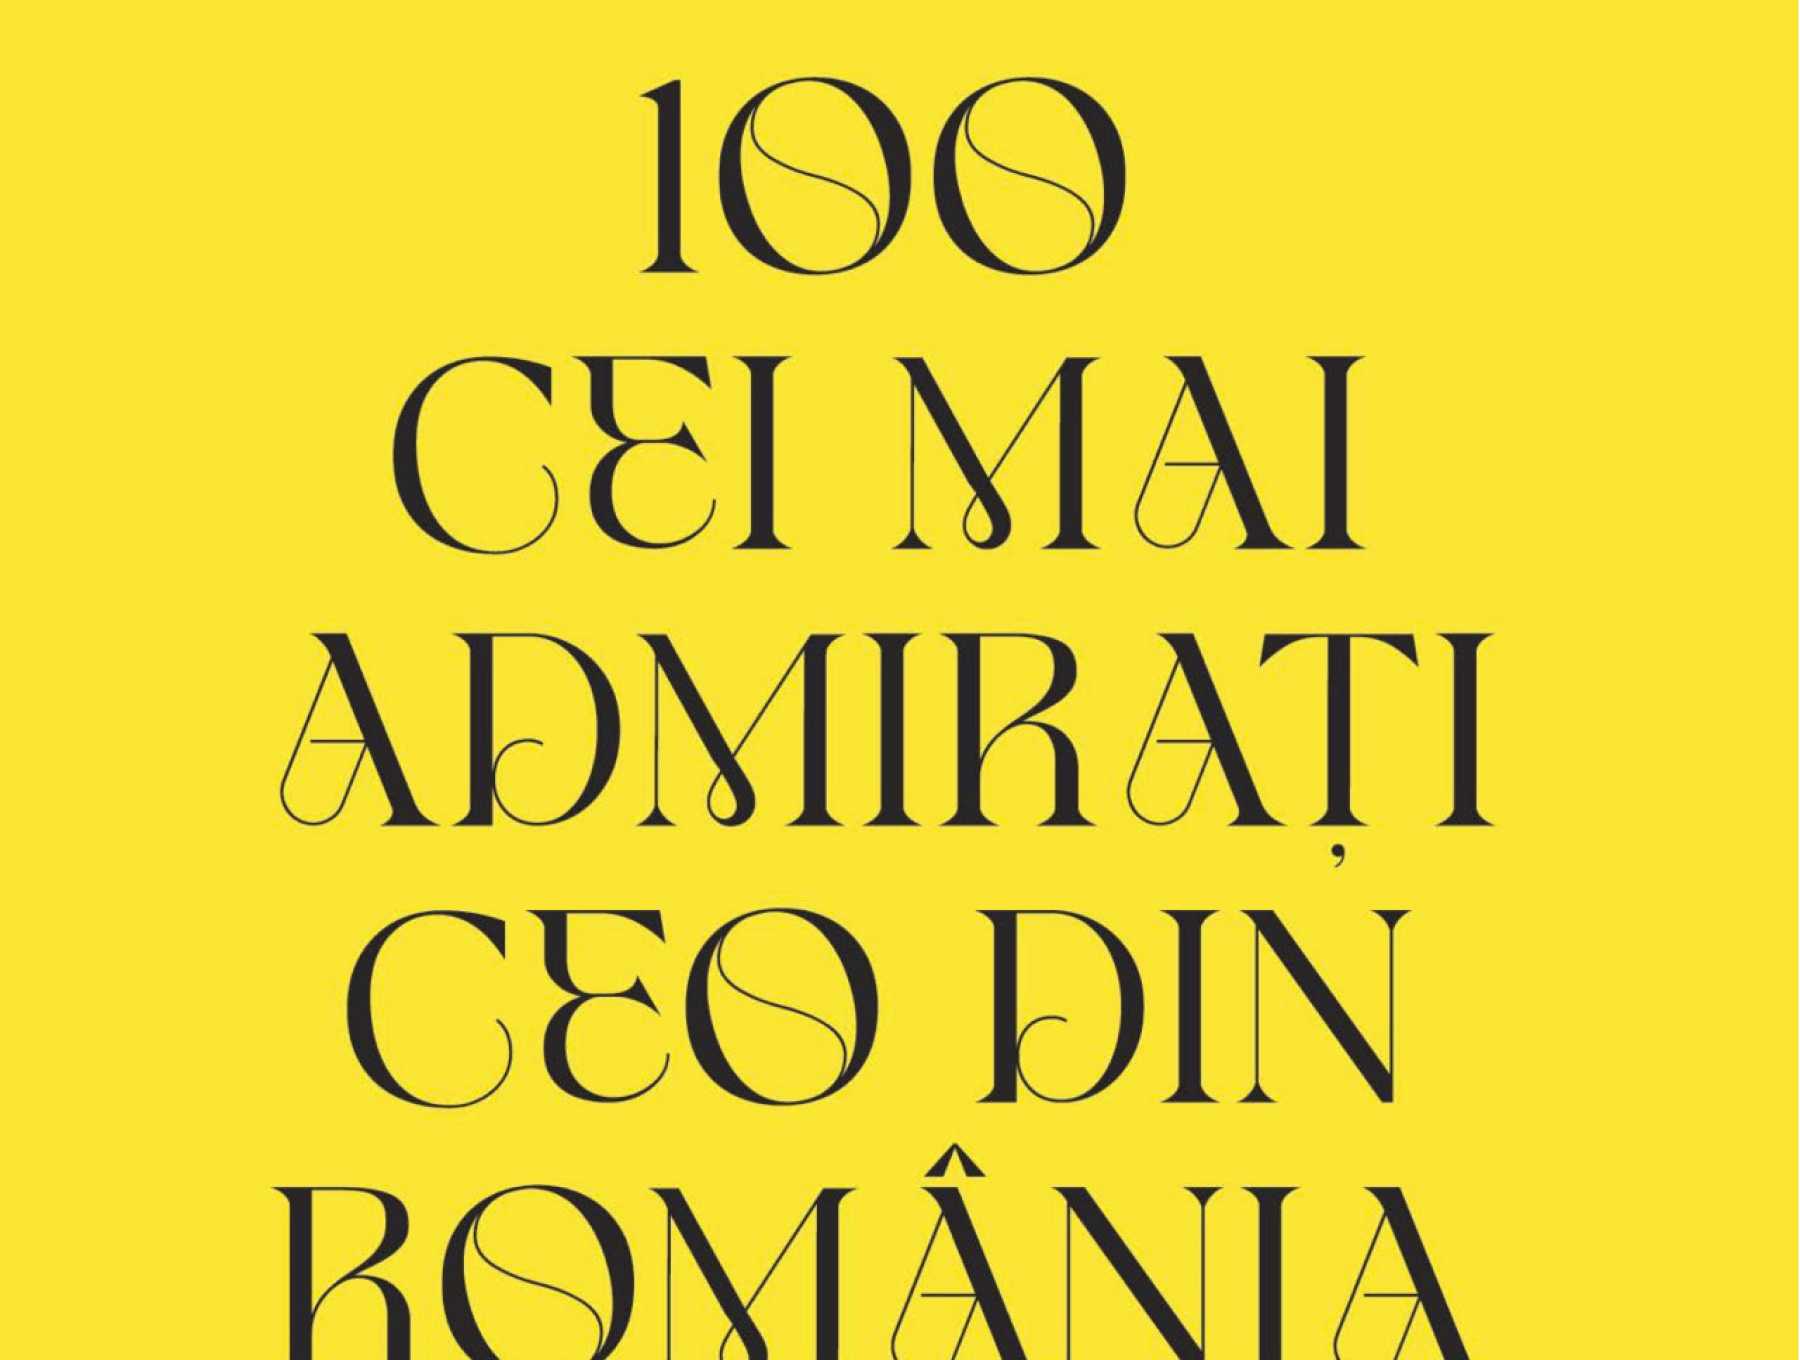 Victor Căpitanu, votat în catalogul Business Magazin „100 cei mai admirați CEO din România”